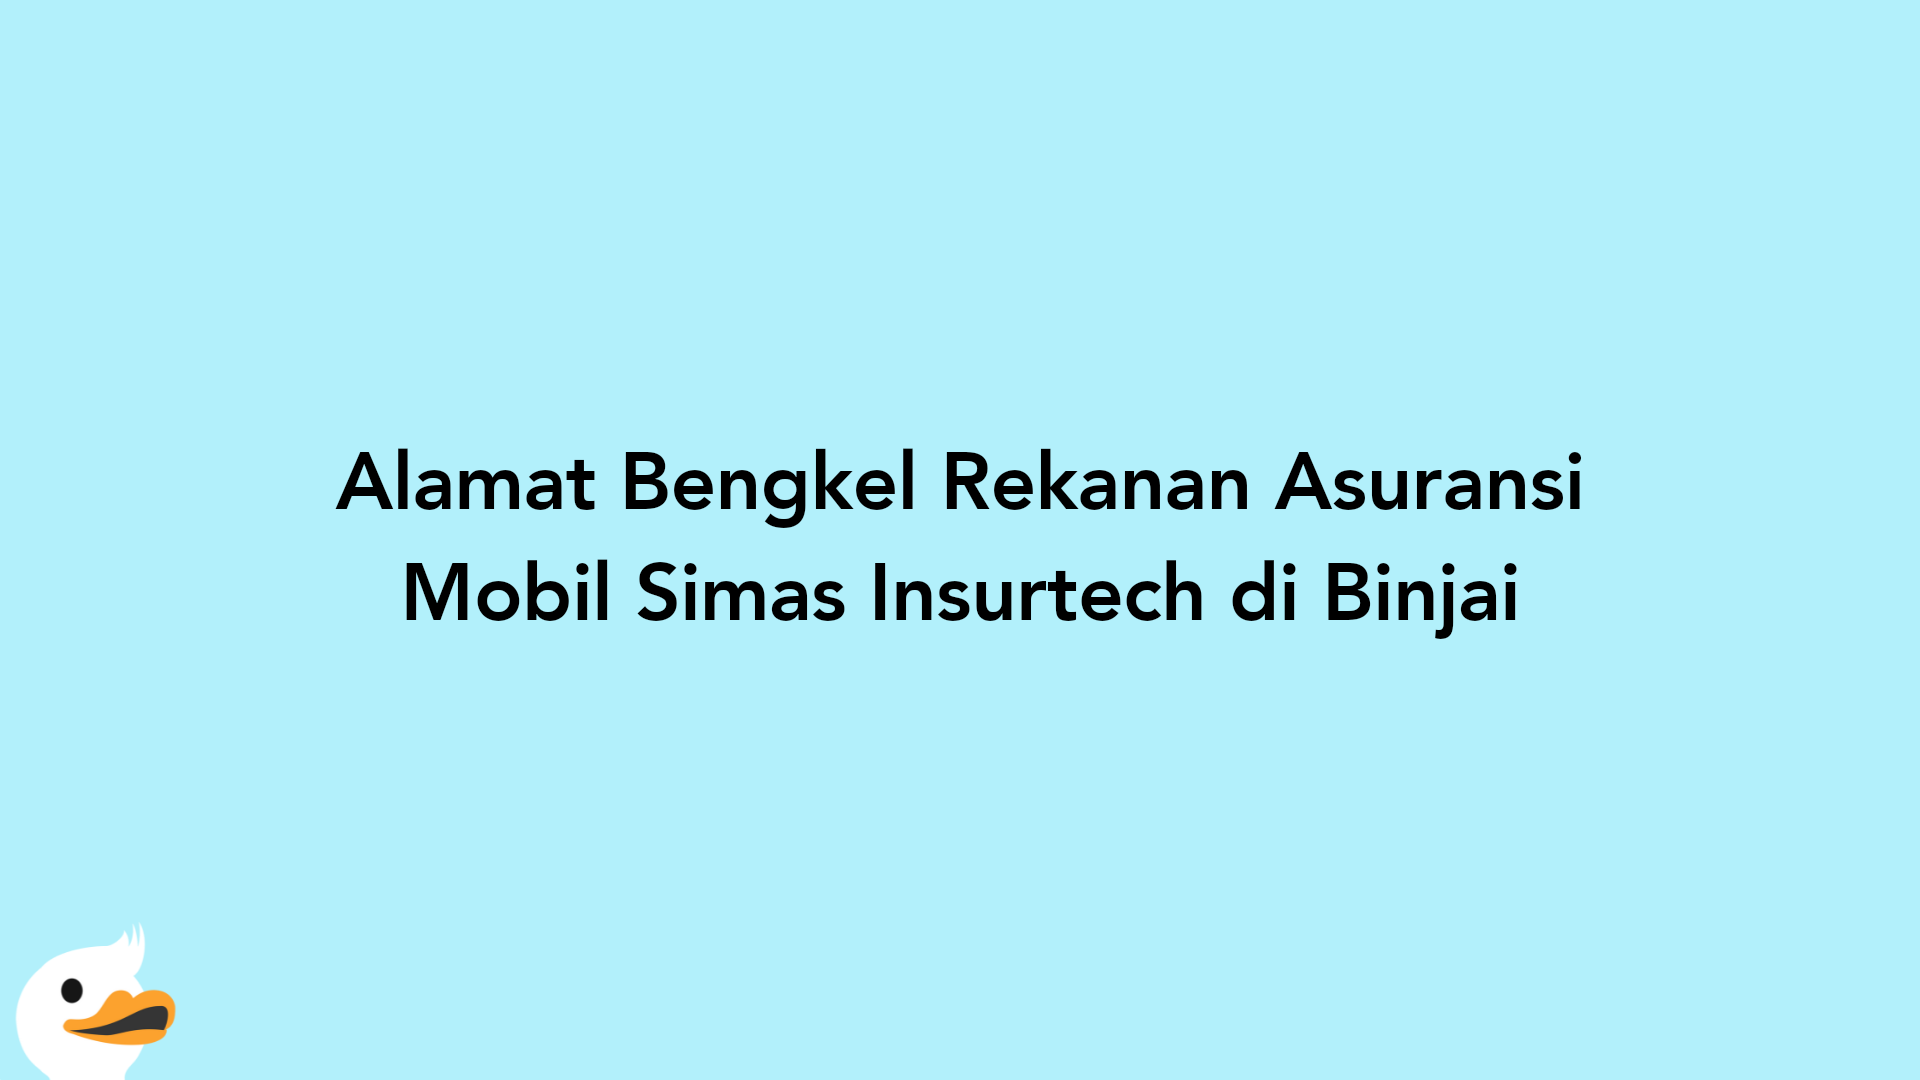 Alamat Bengkel Rekanan Asuransi Mobil Simas Insurtech di Binjai